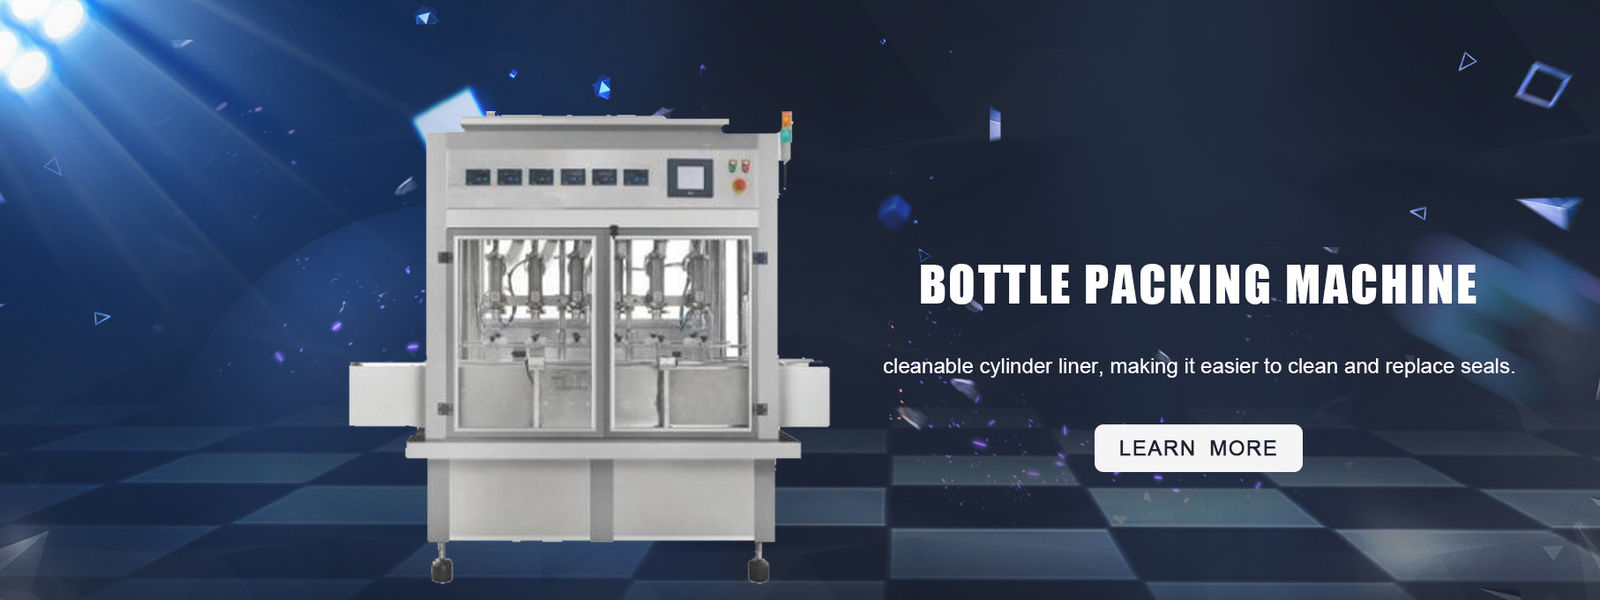 Maszyna do pakowania butelek